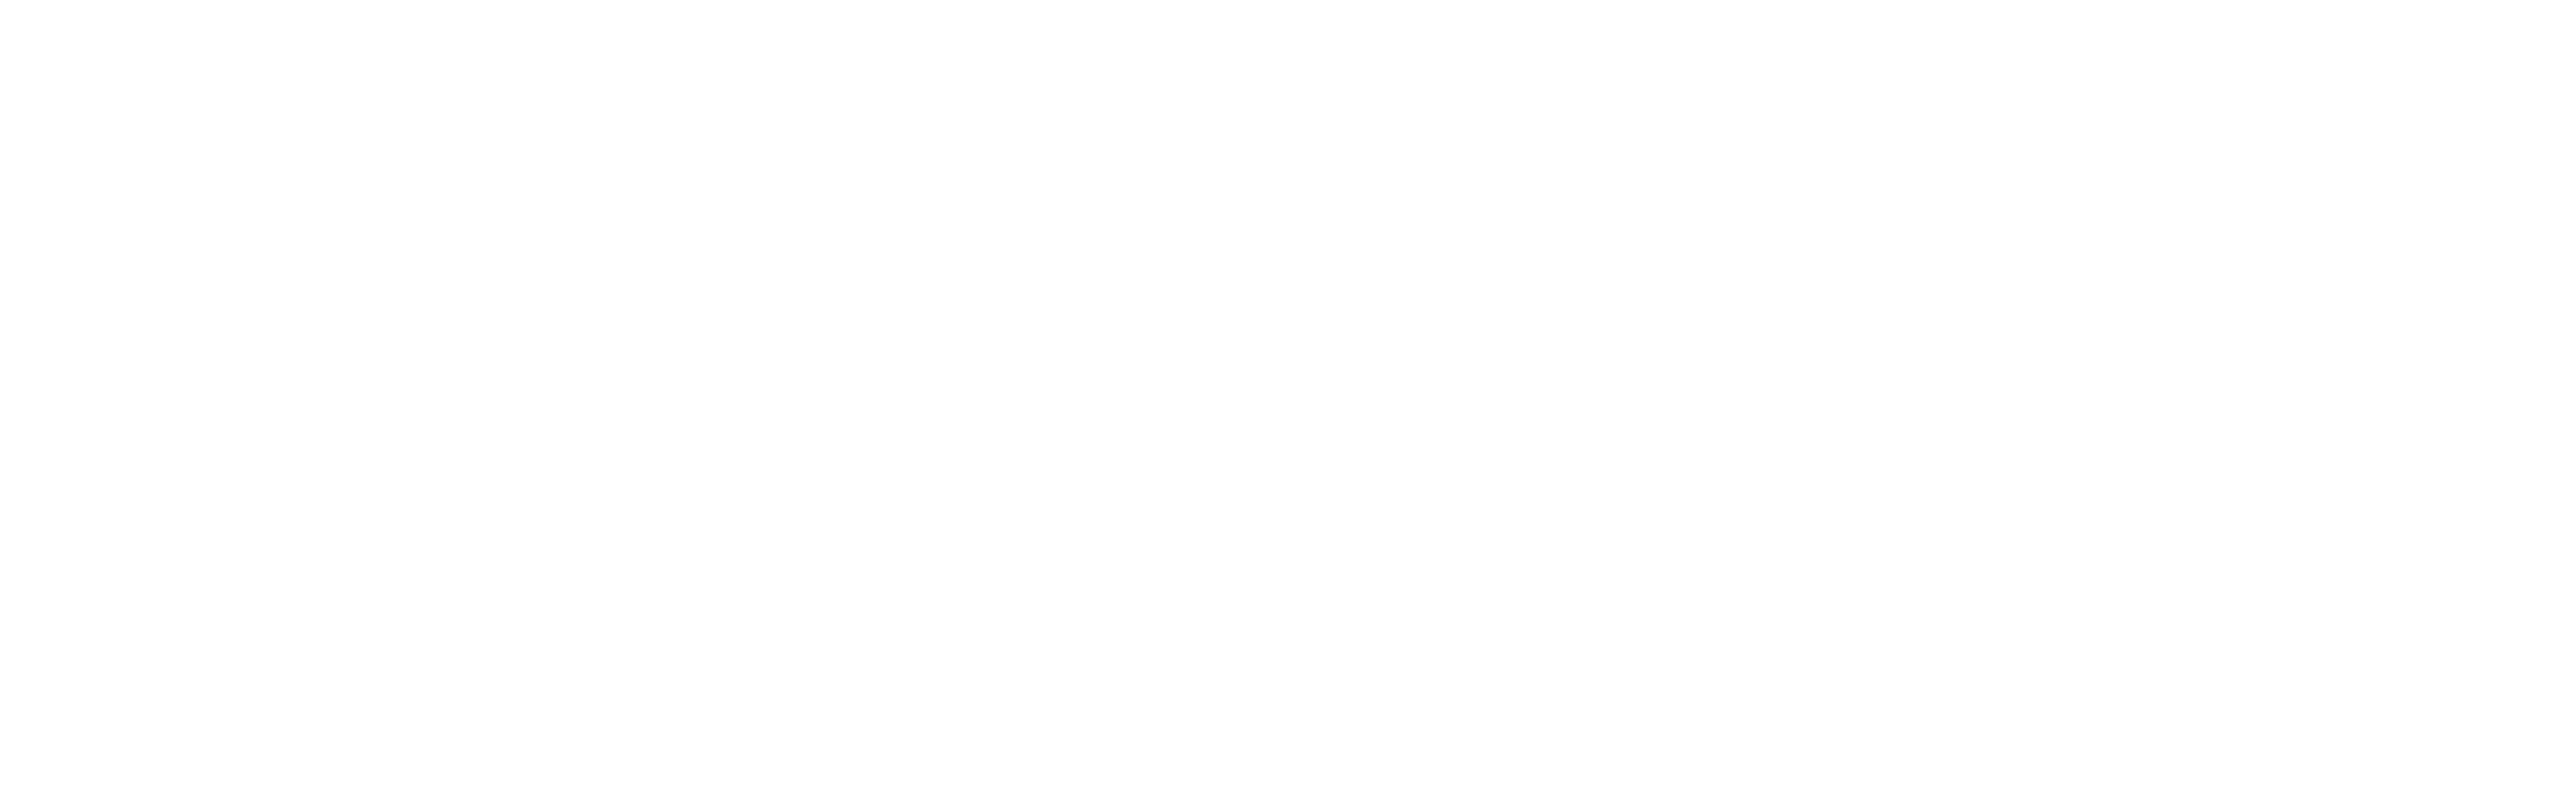 MetaCTF2020 Logo